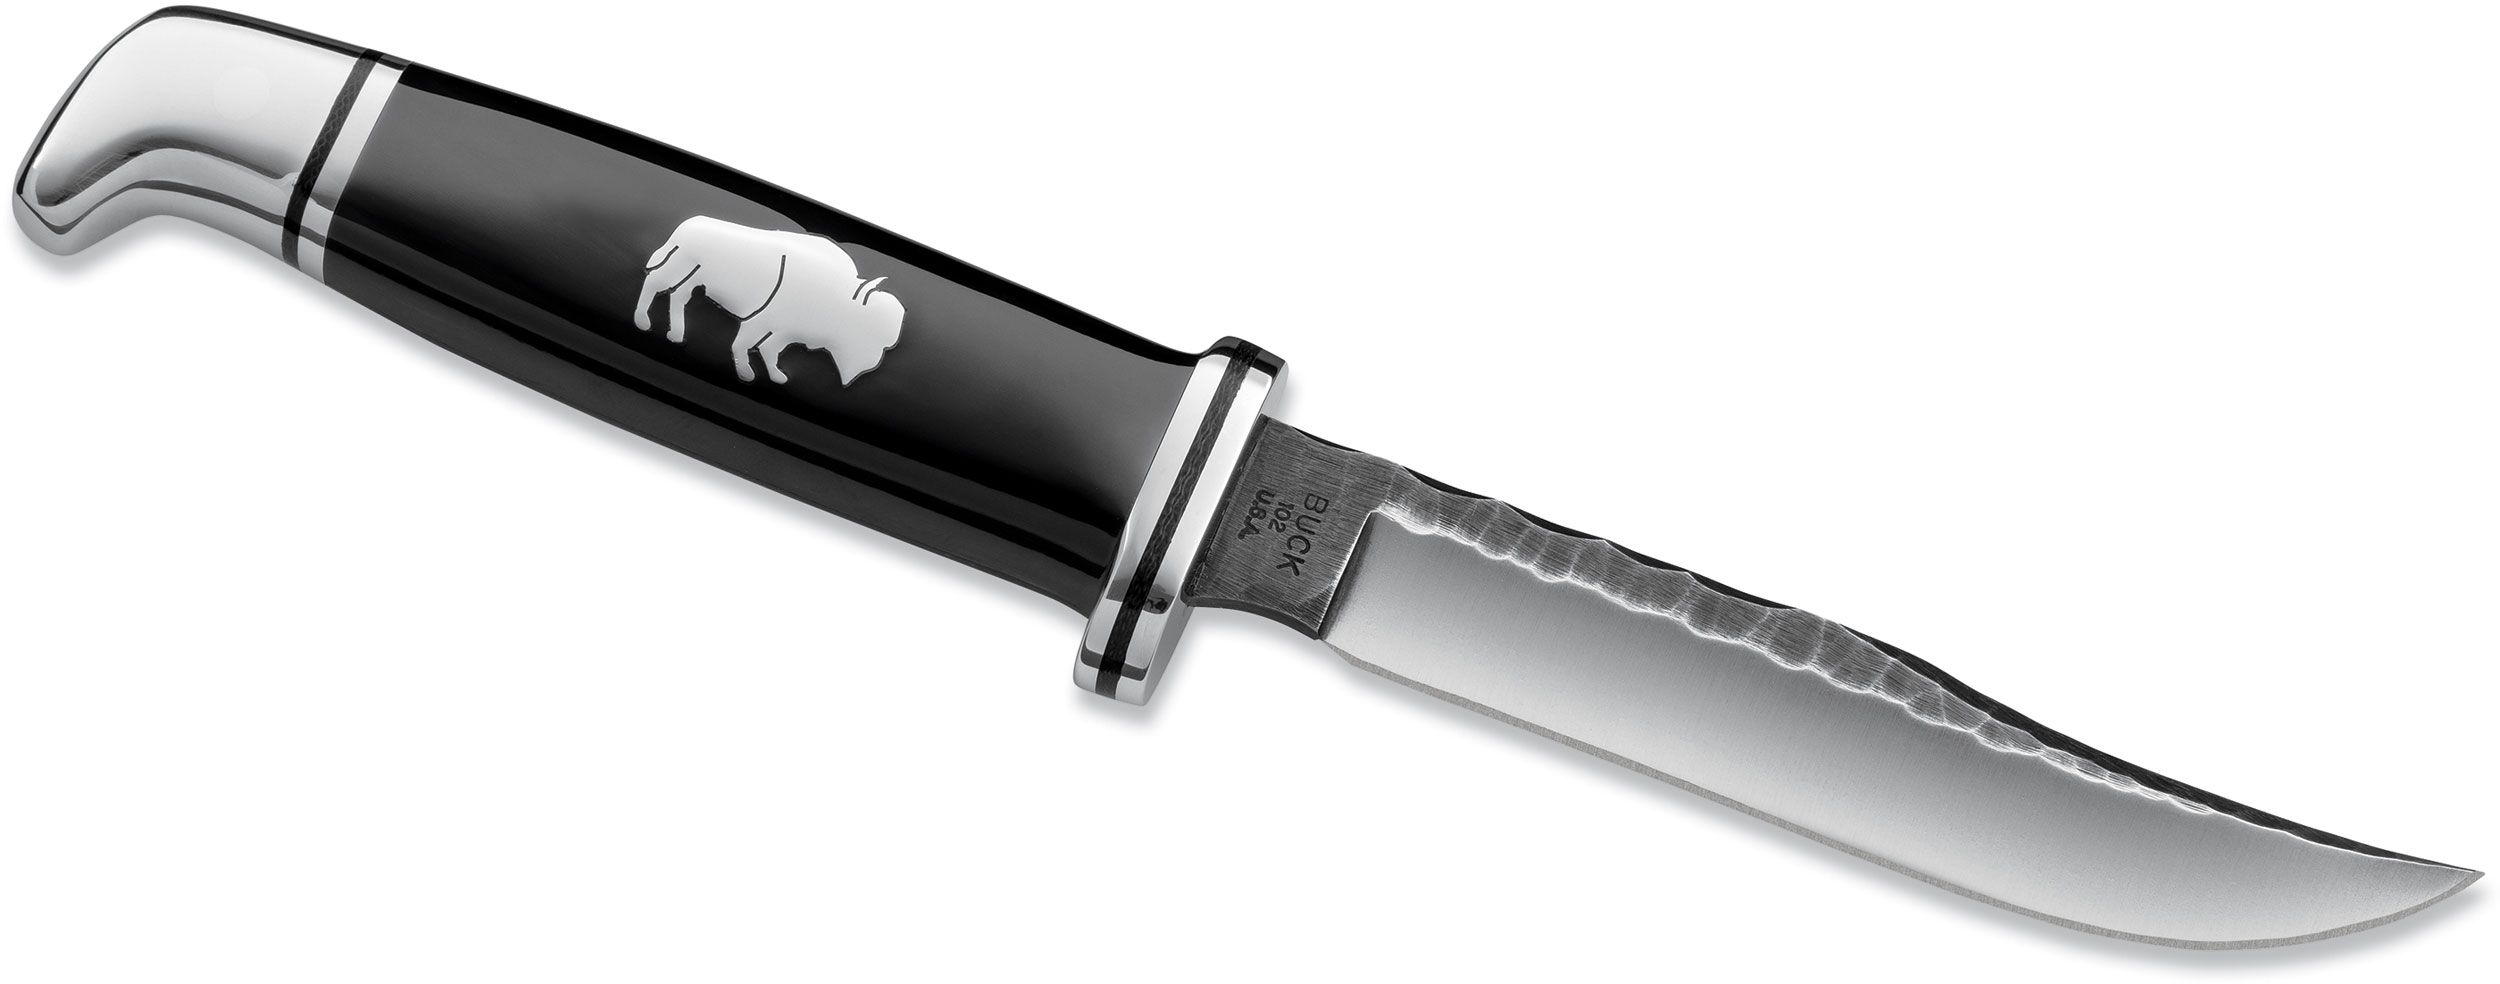 Buck 102 Chip Flint and Buffalo Woodsman Fixed 4 Blade (0102BKS) -  KnifeCenter - 7822 - Discontinued